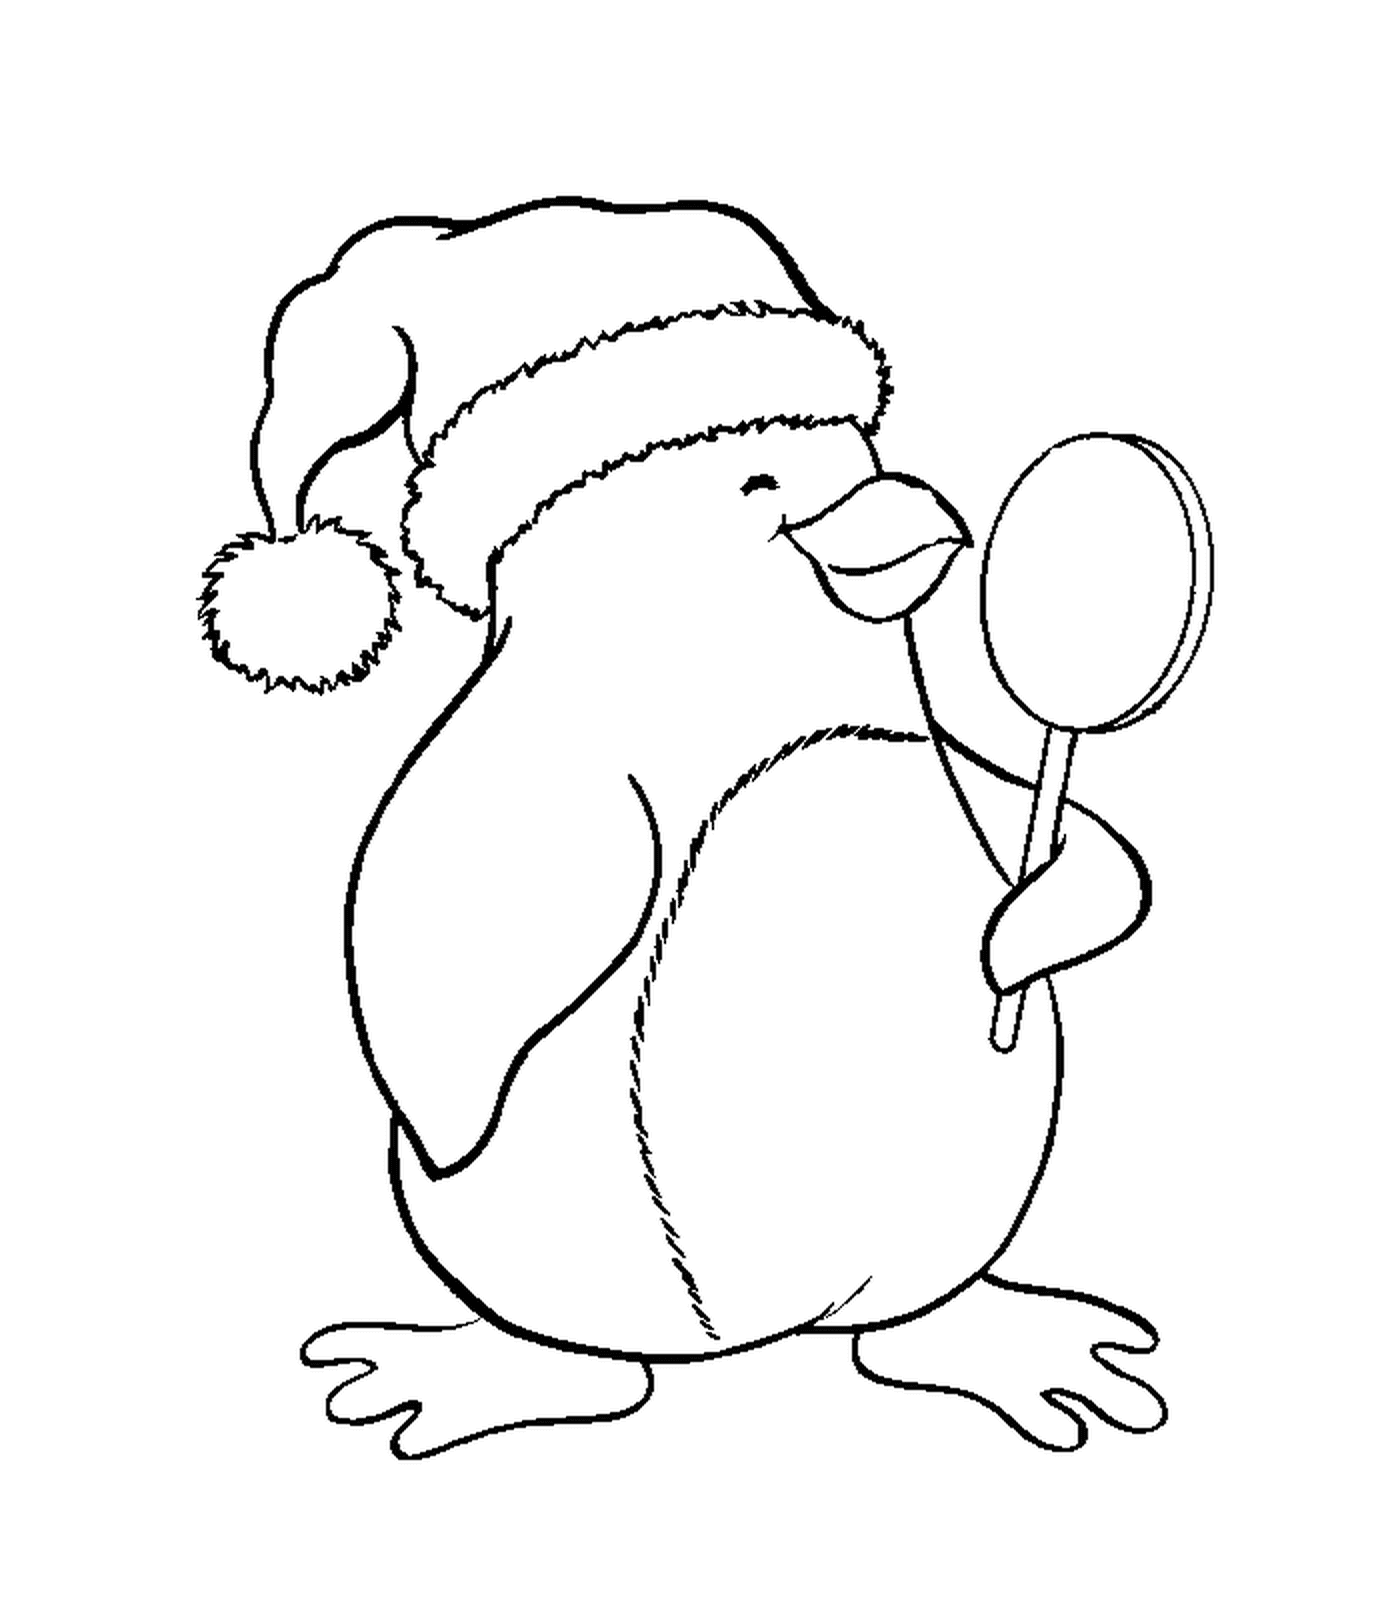  持有棒棒棒糖的圣诞企鹅 